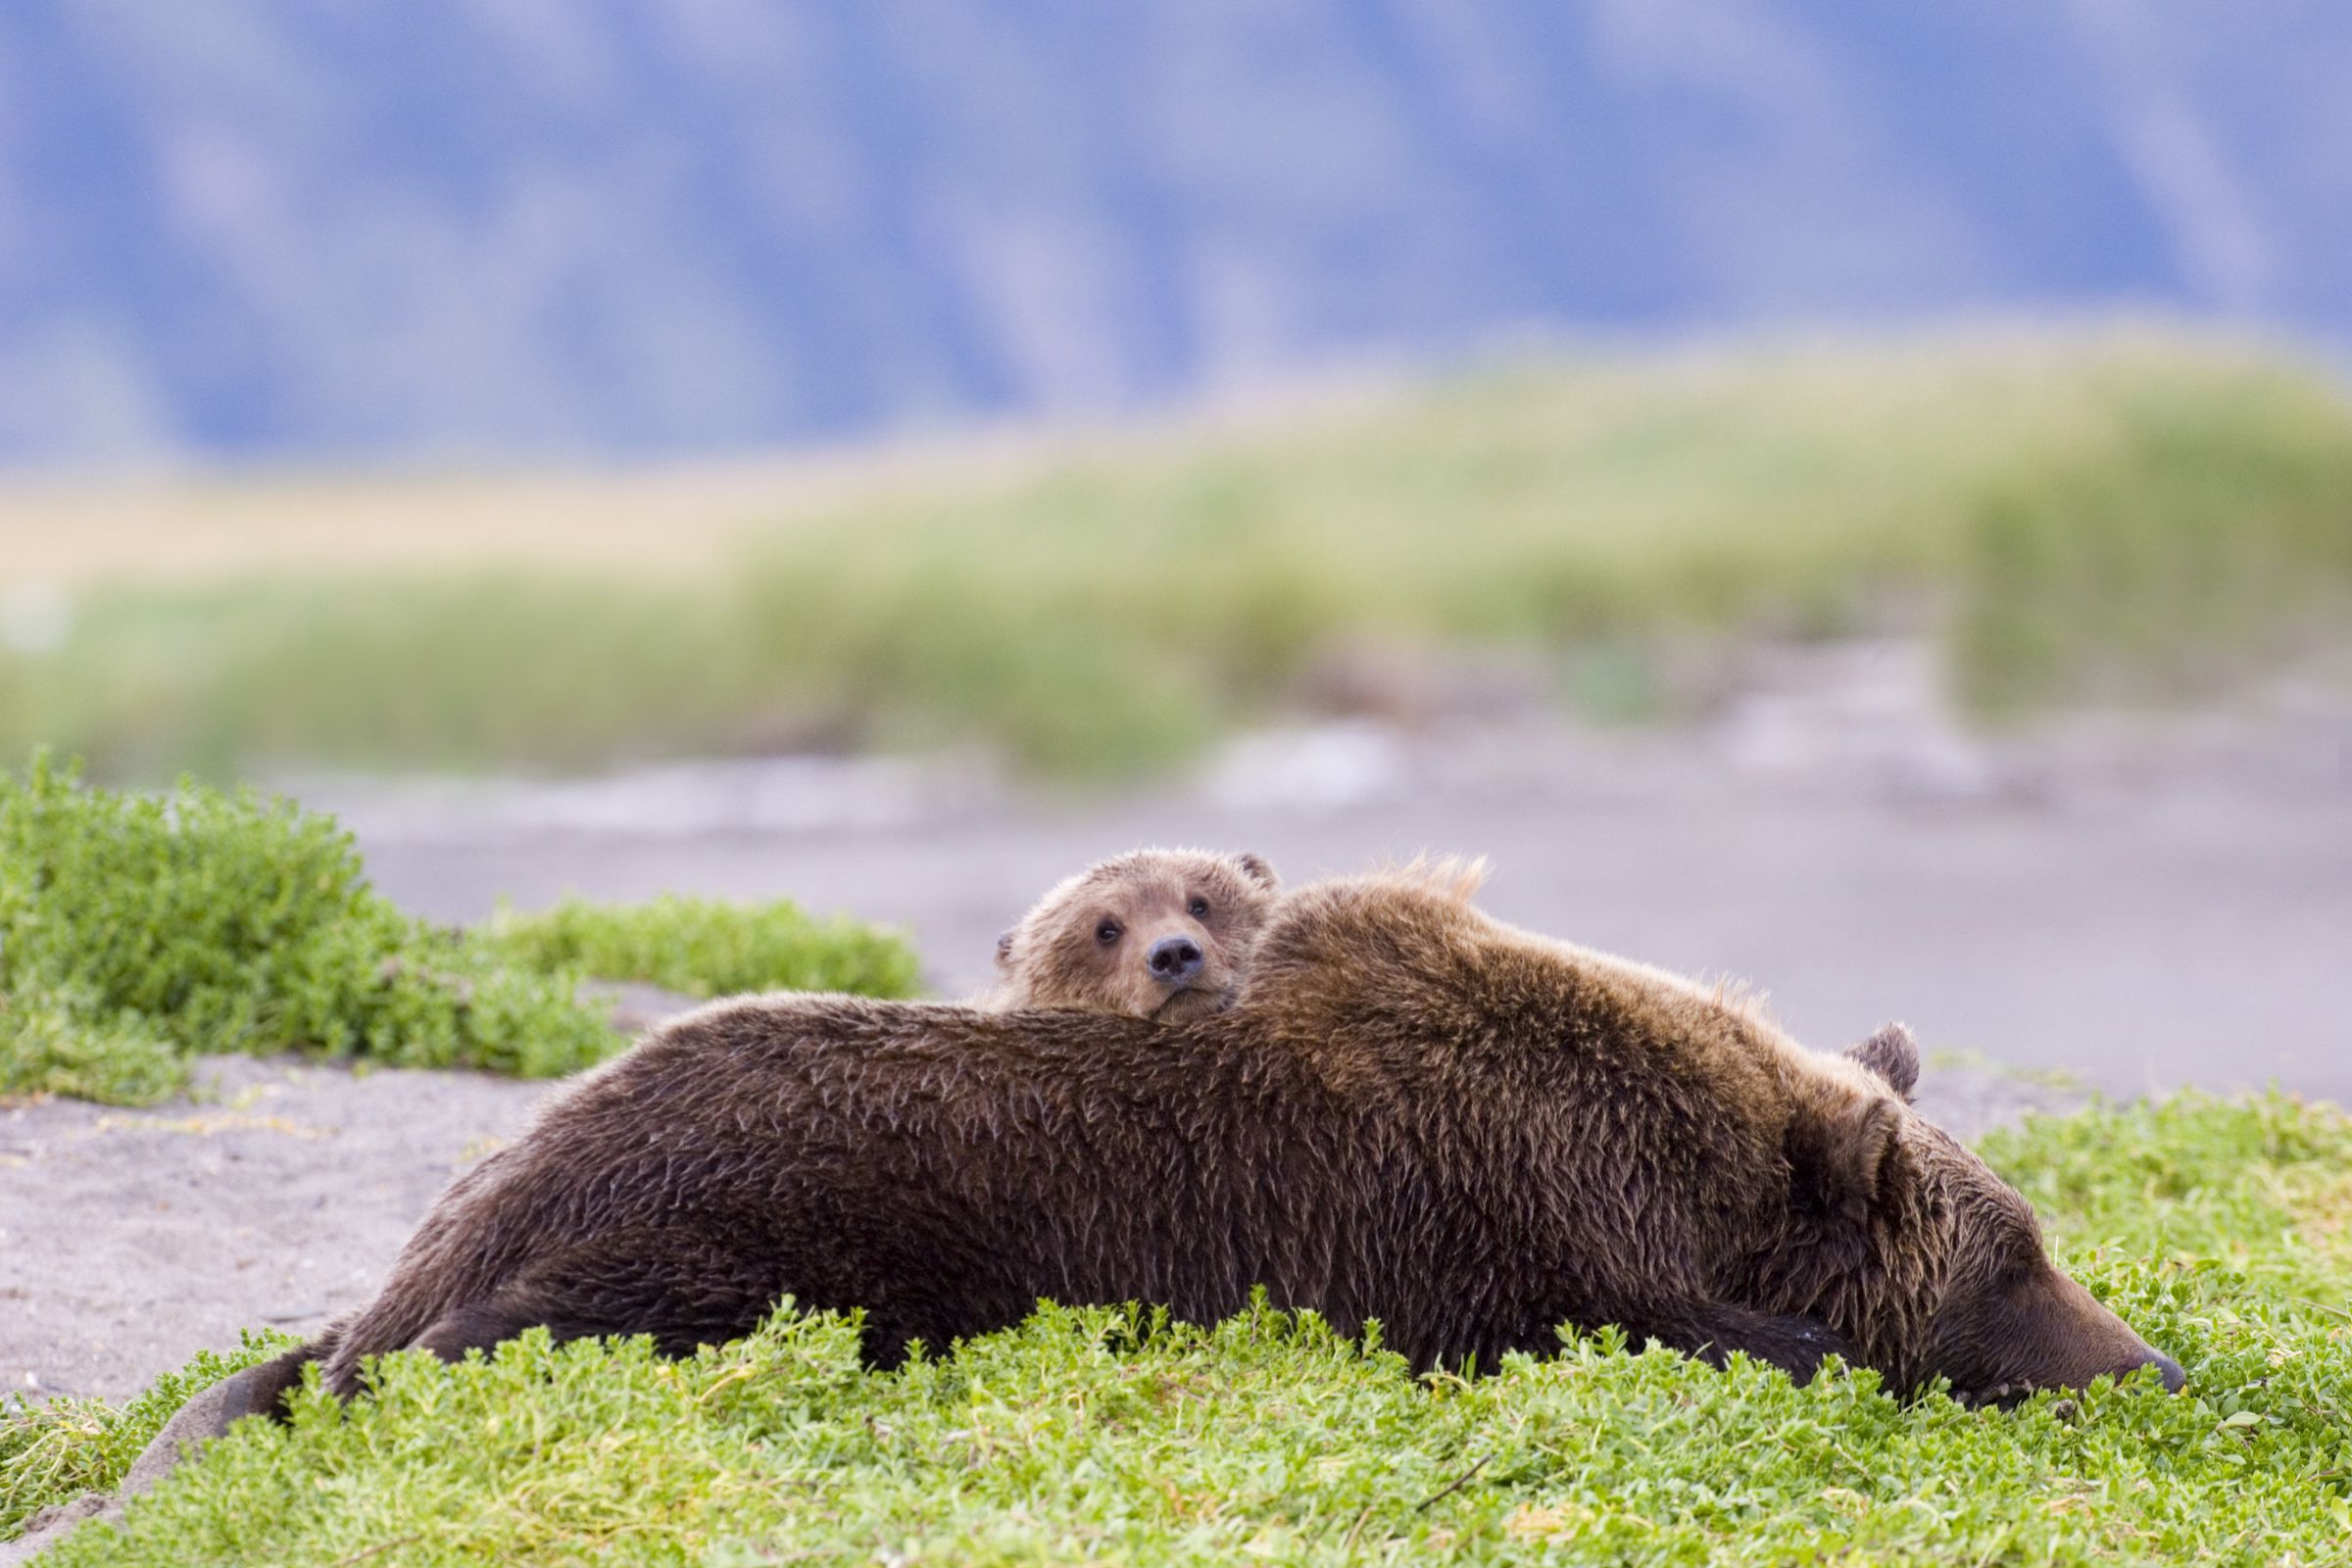 Brown Bear mother with cub, Ursos arctos, Katmai Alaska